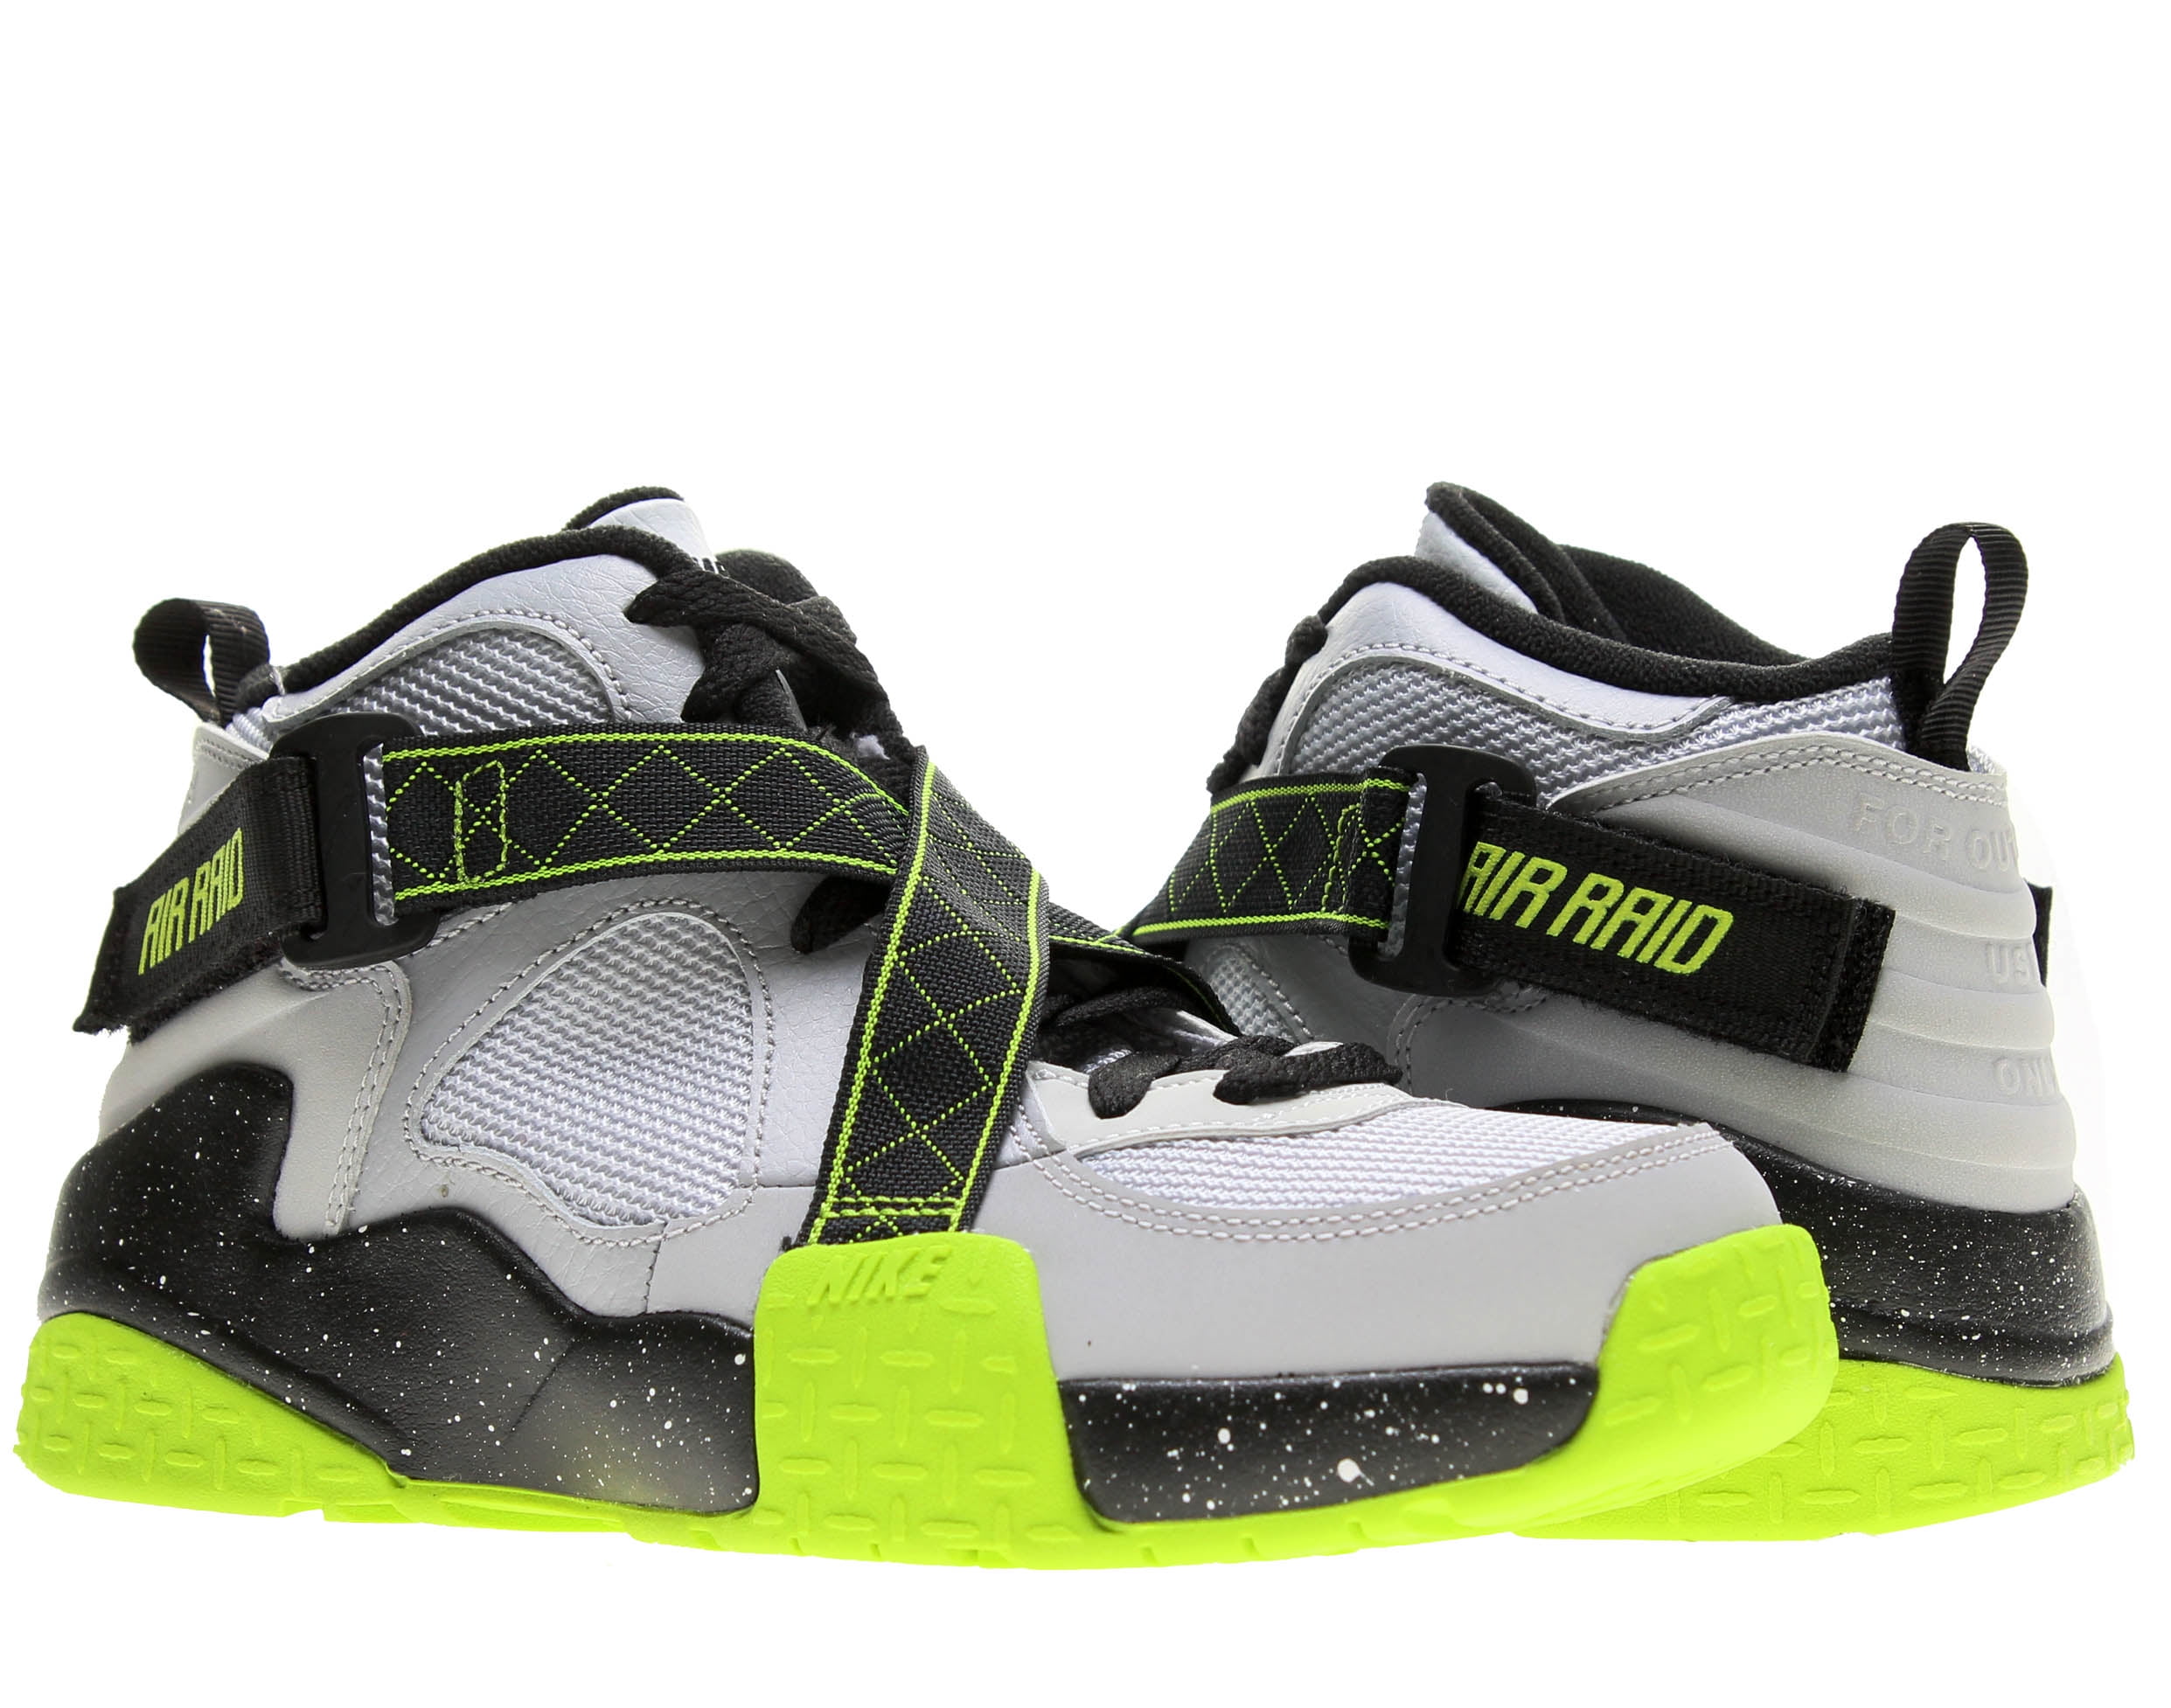 Nike Air Raid Athletic Shoes